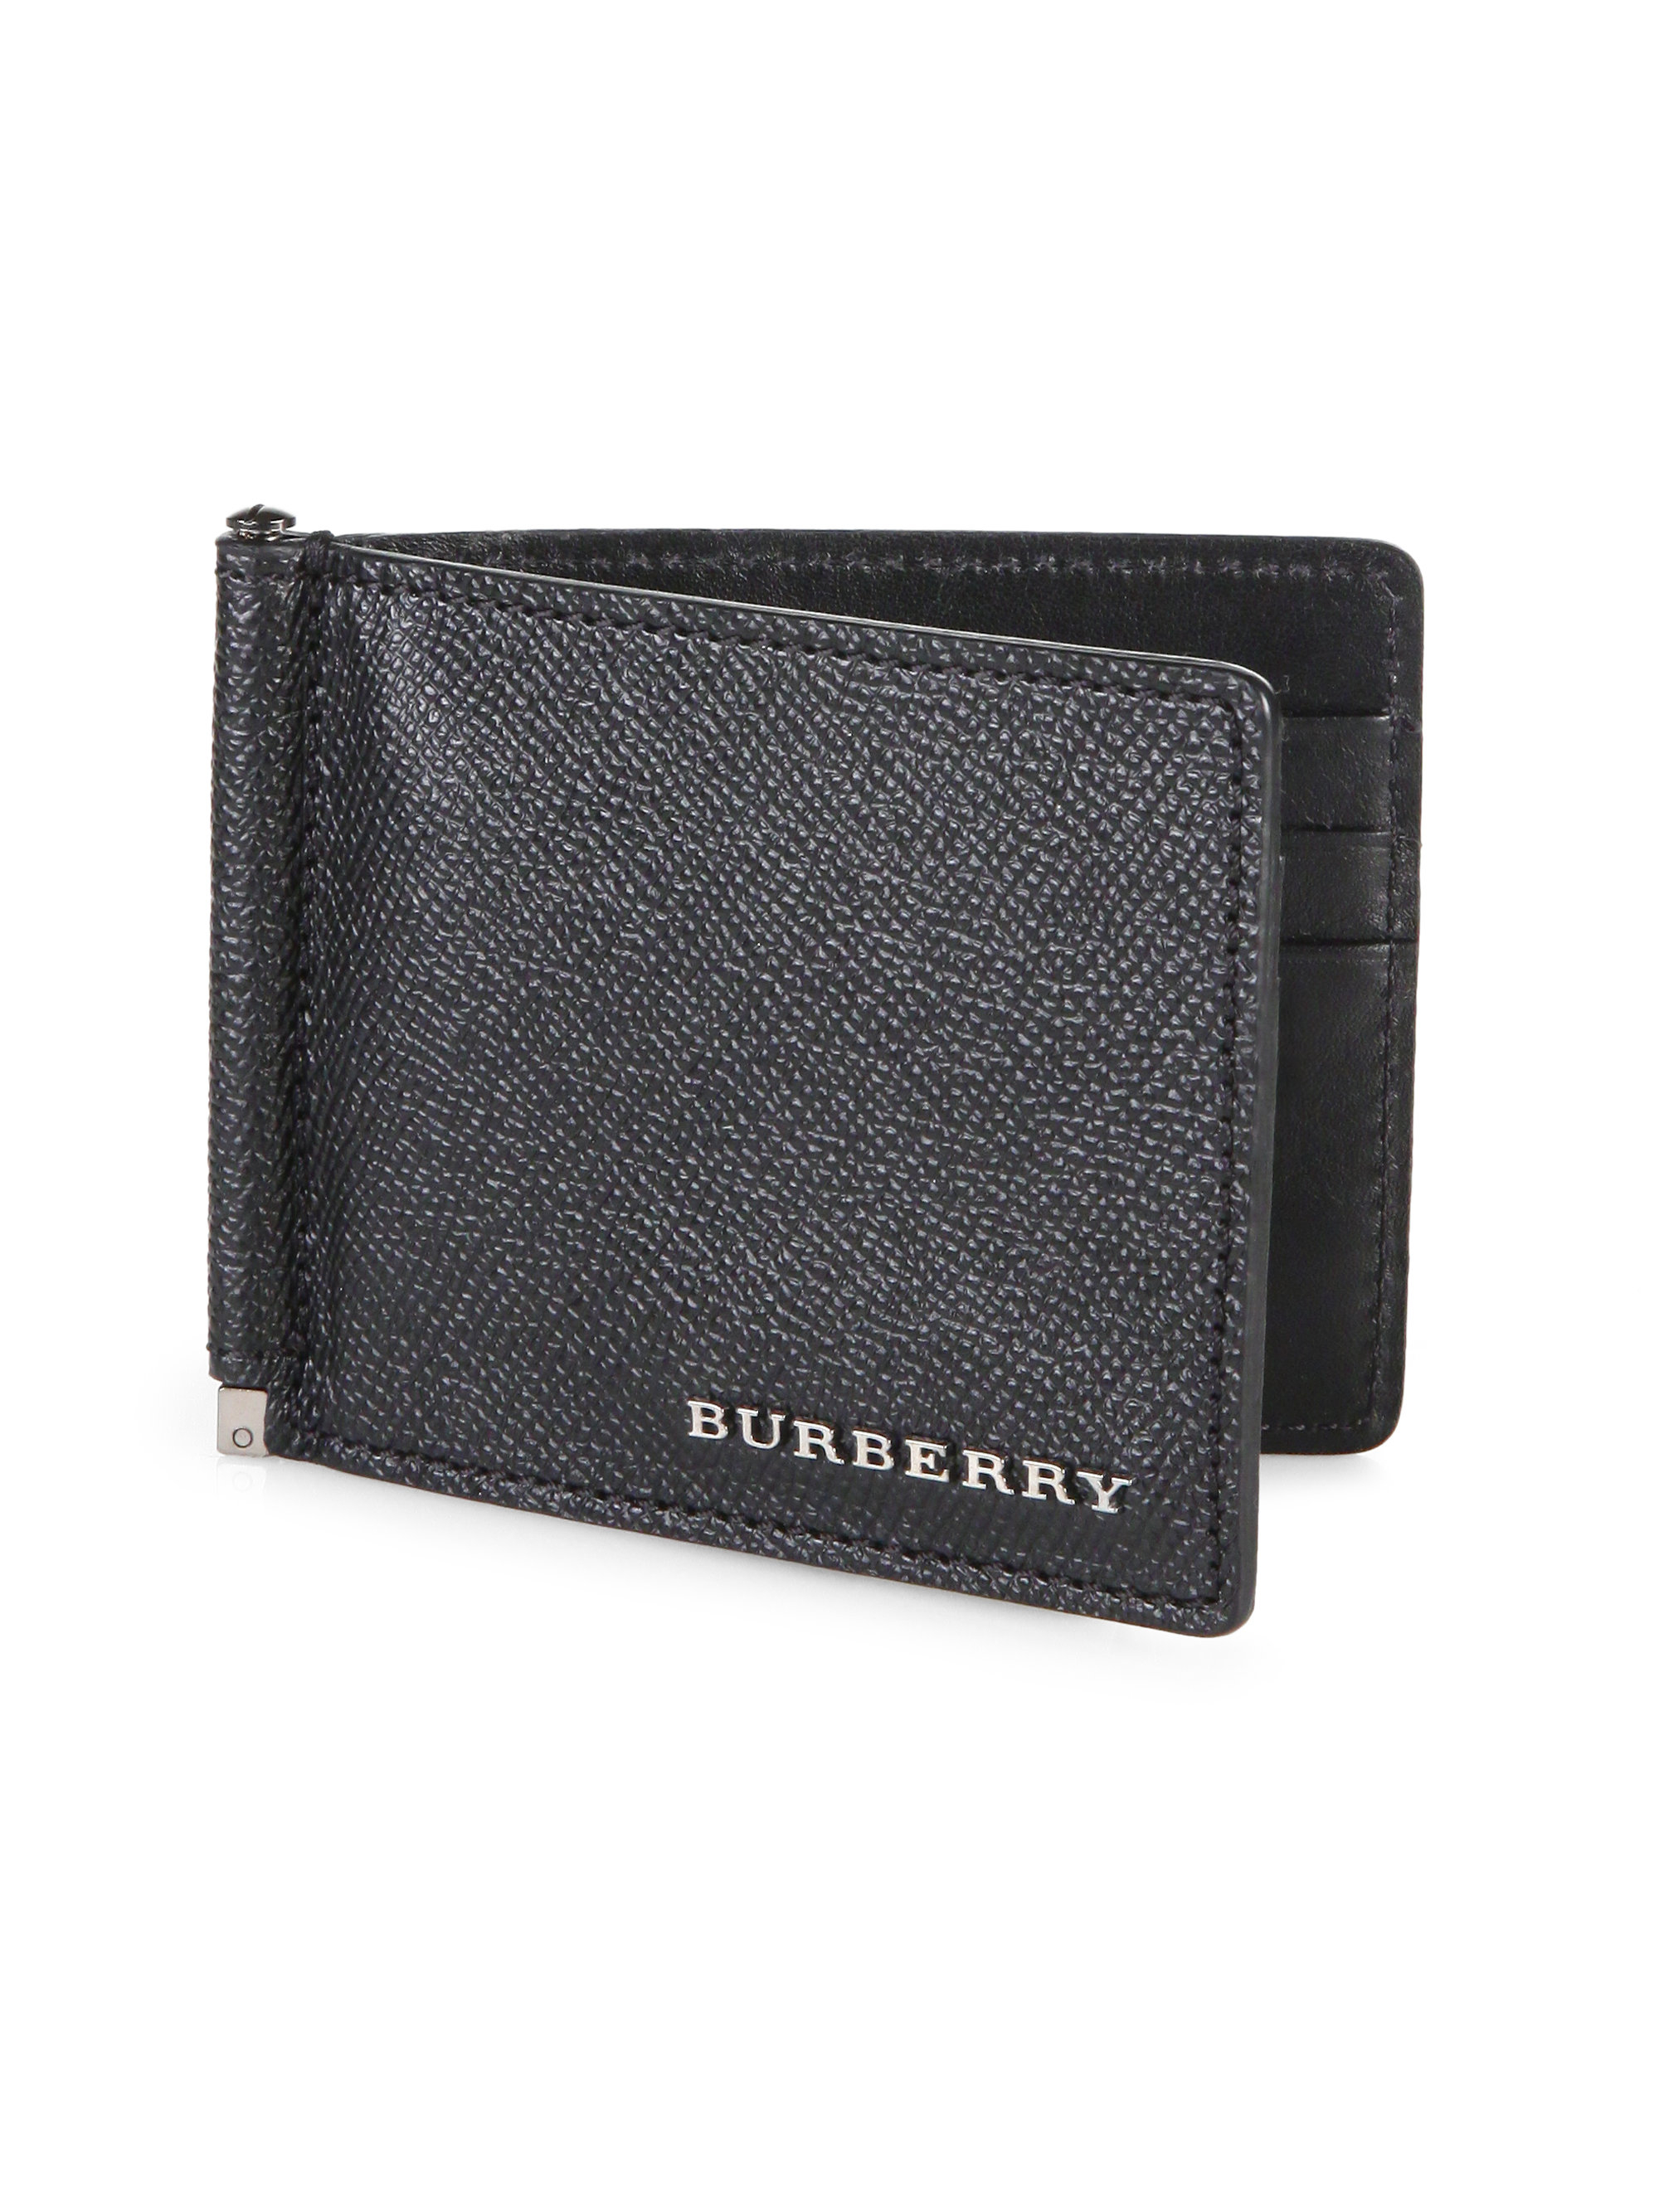 men's burberry wallet